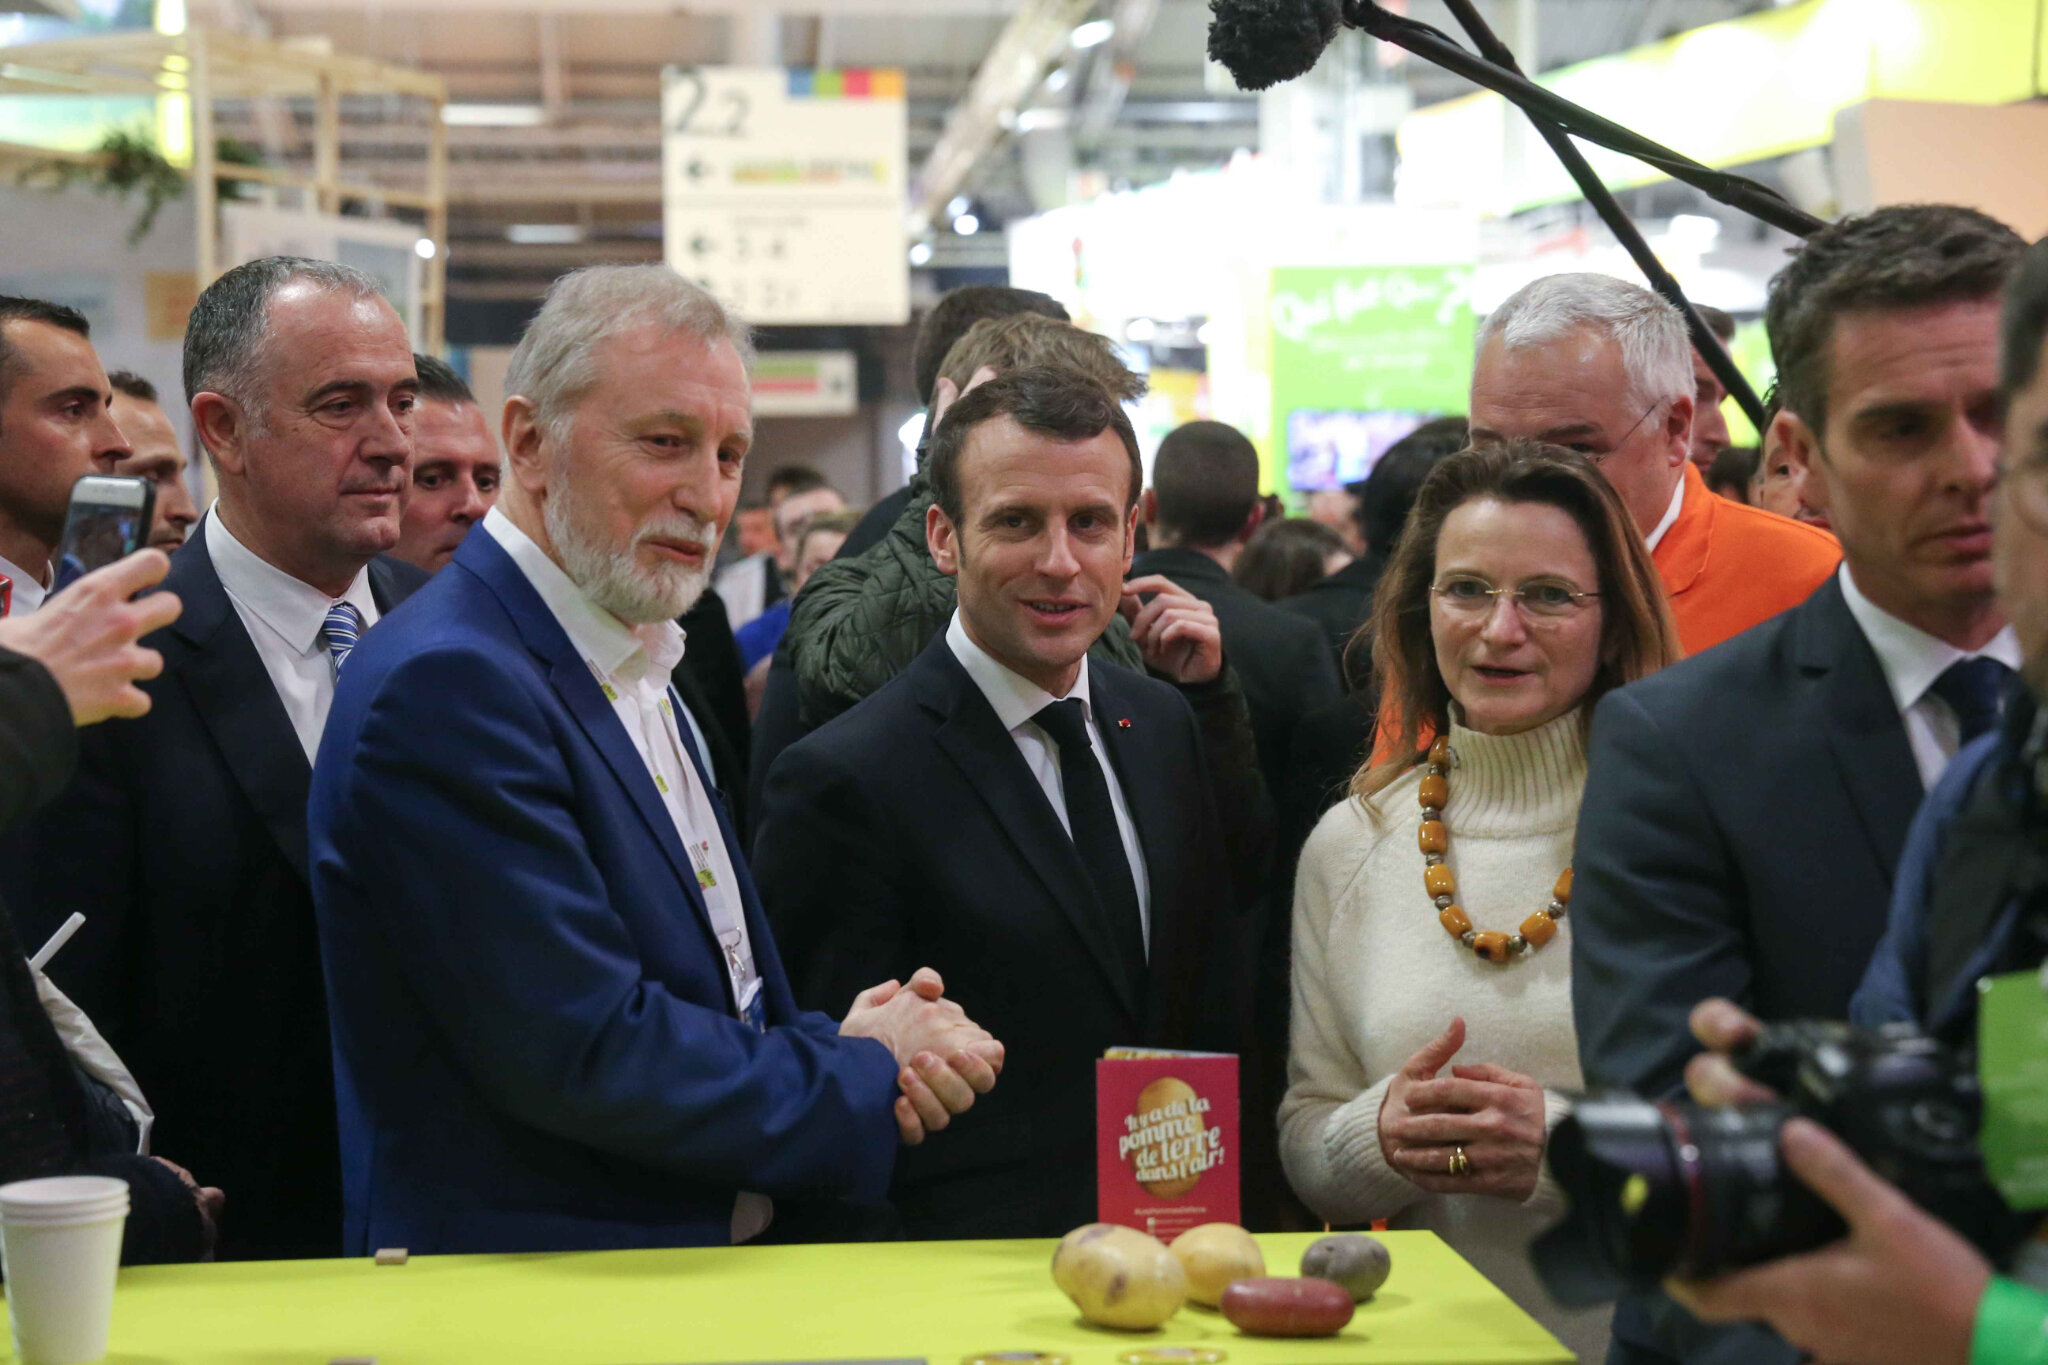  Au Salon de l’agriculture 2019, Emmanuel Macron bat tous les records. © Michel Stoupak. Sam 23.02.2019, 21h19m06.